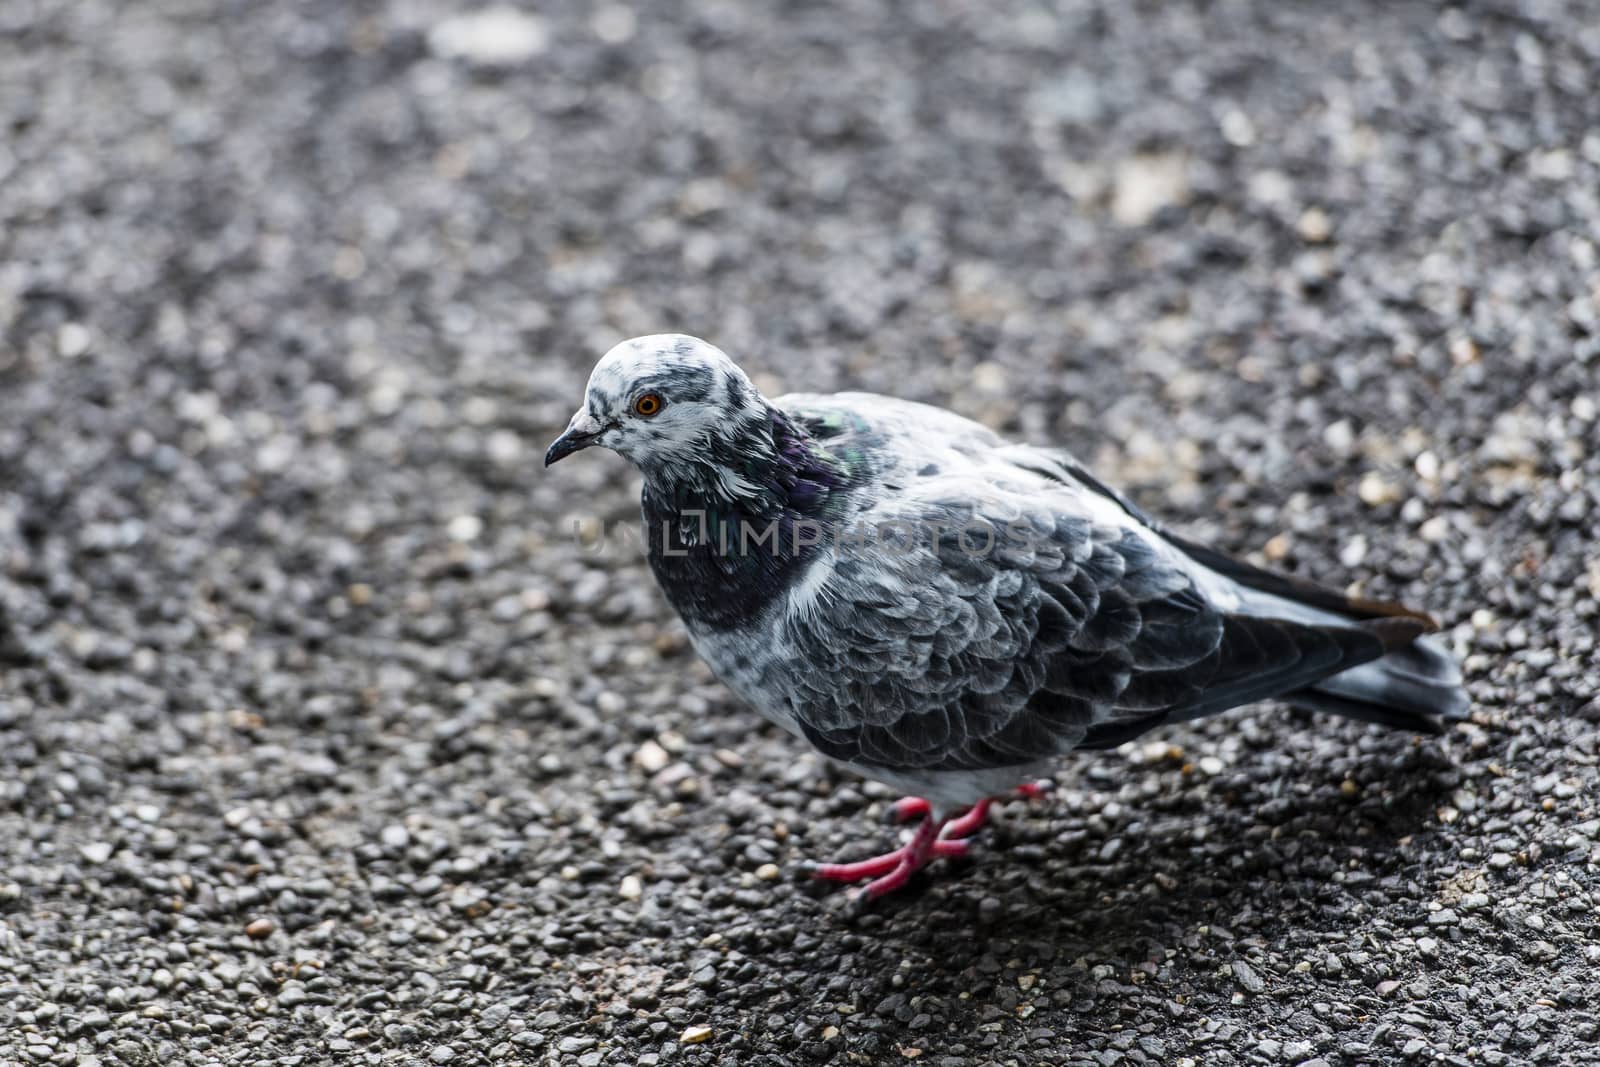 Peaceful pigeon by MohanaAntonMeryl